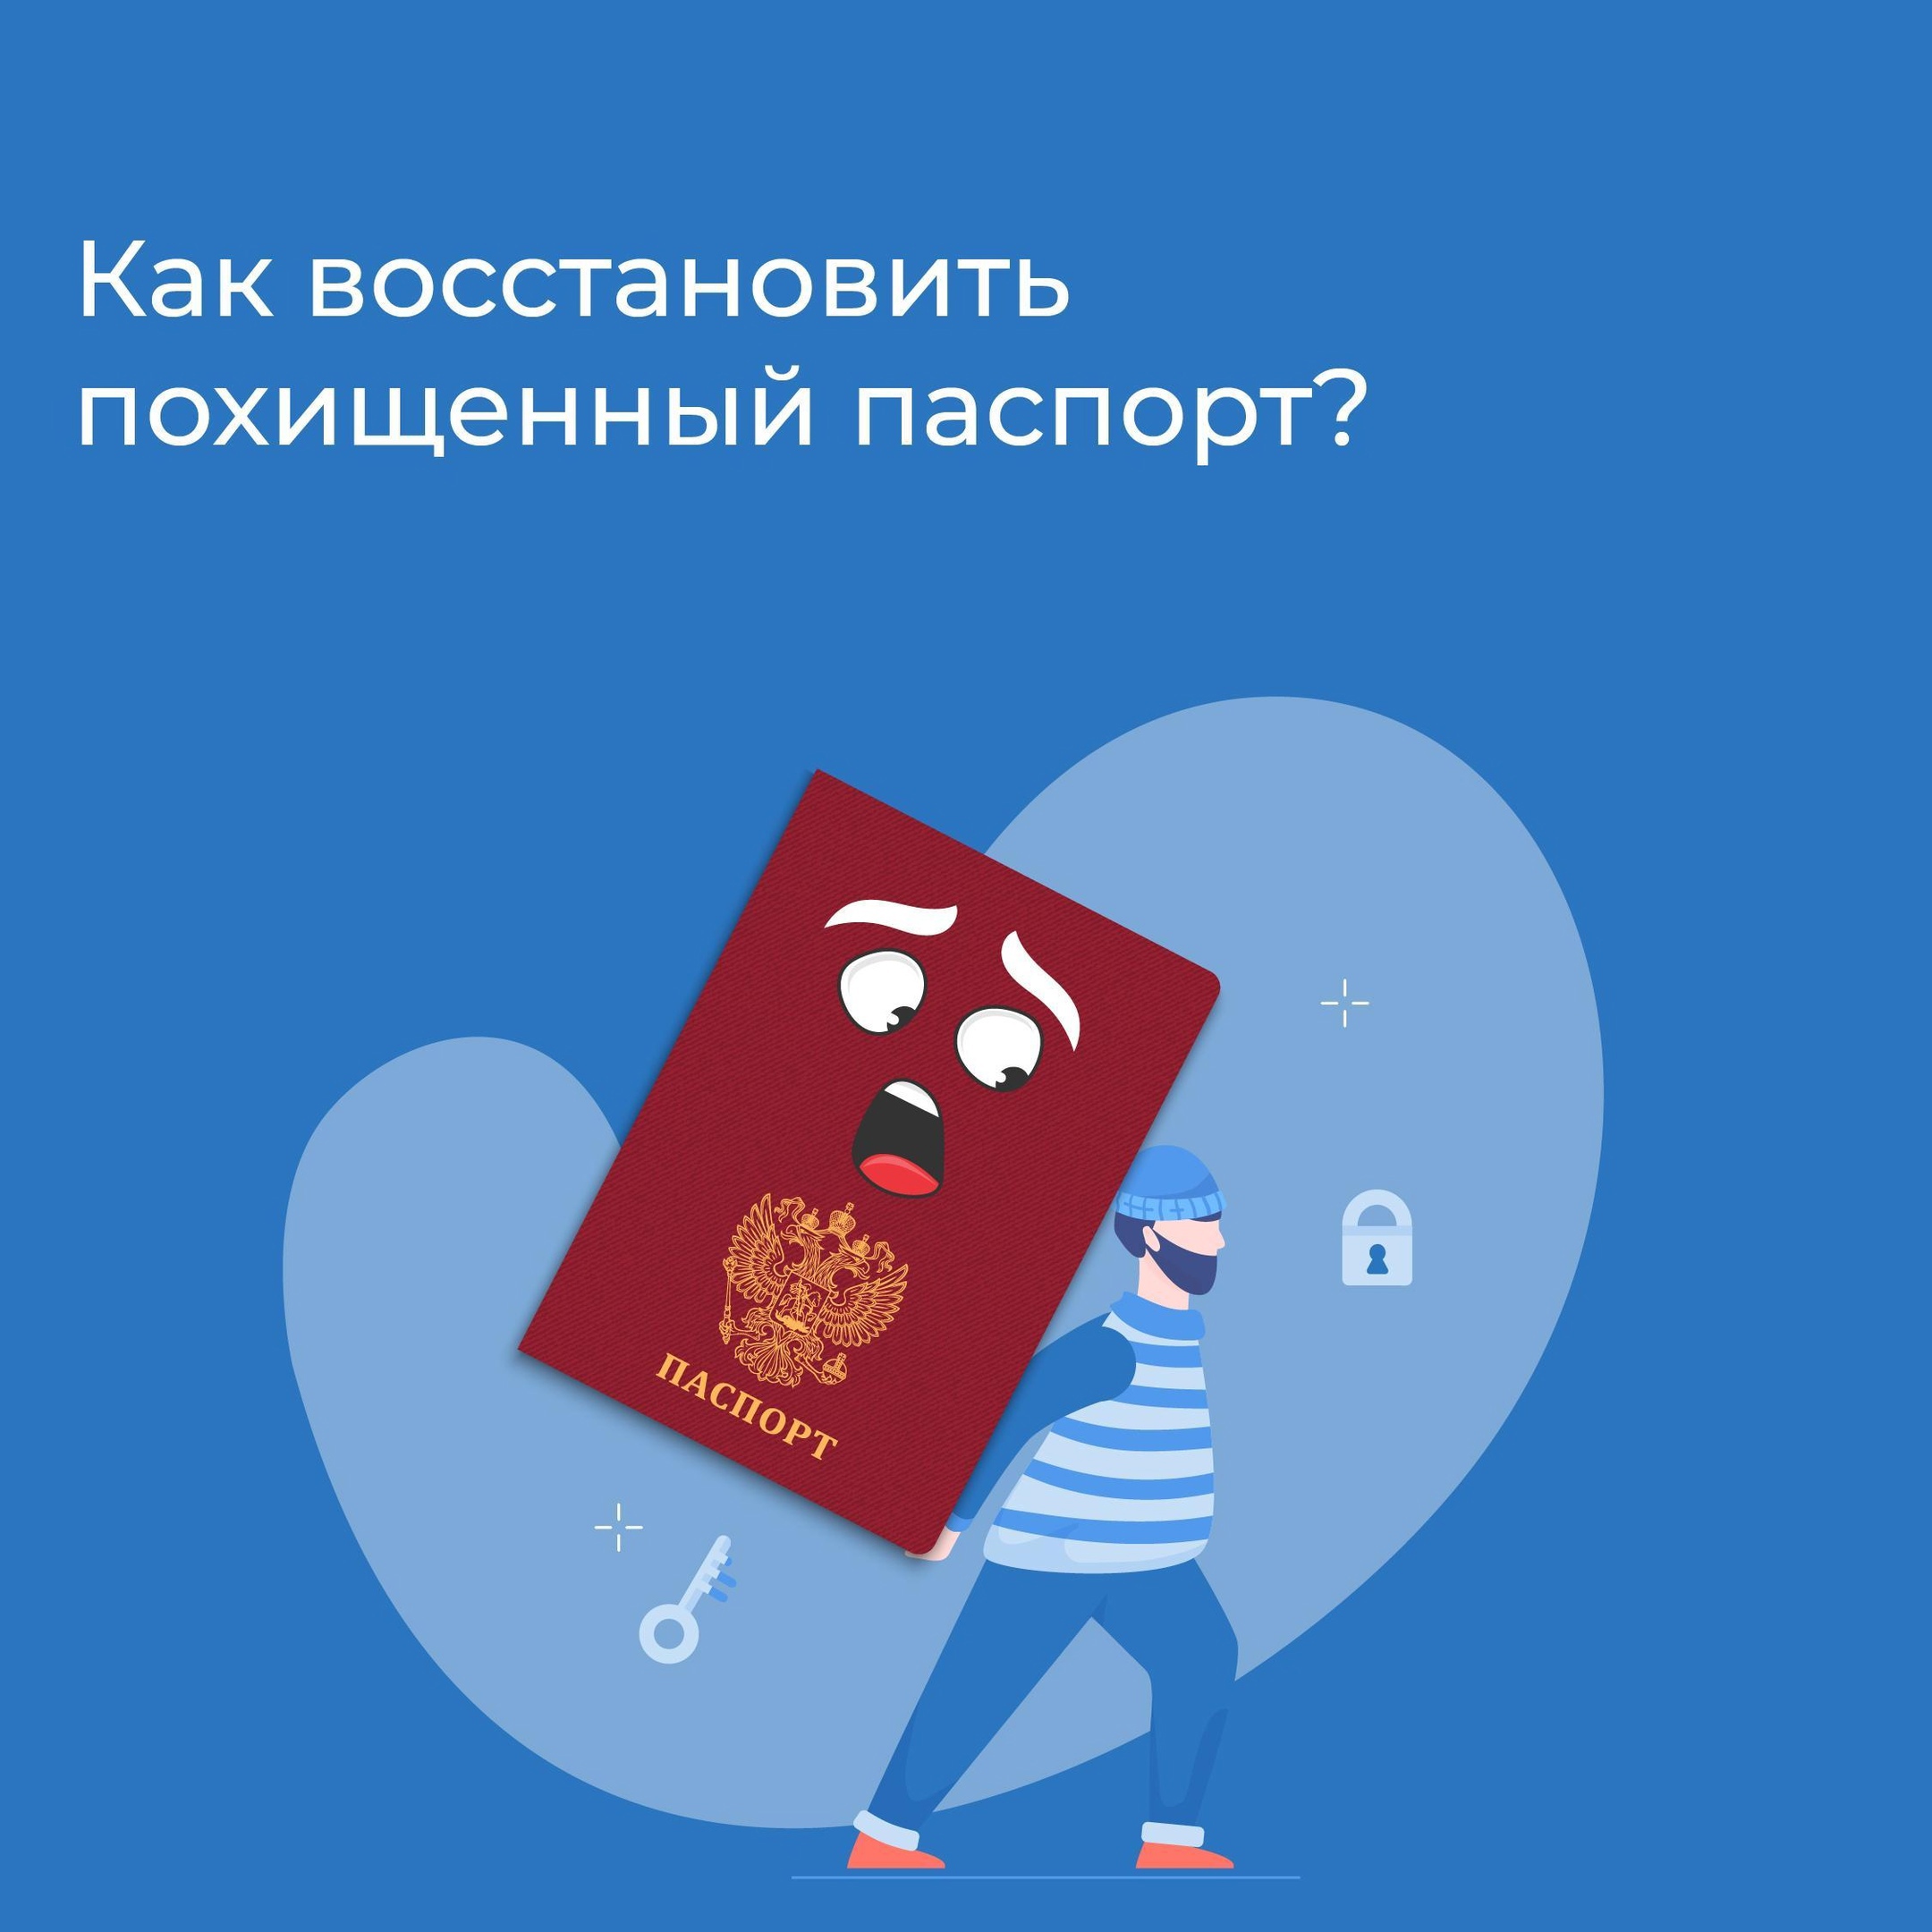 Что делать если утерян паспорт? Подавайте заявление об утере или хищении в ближайшее отделение МВД..